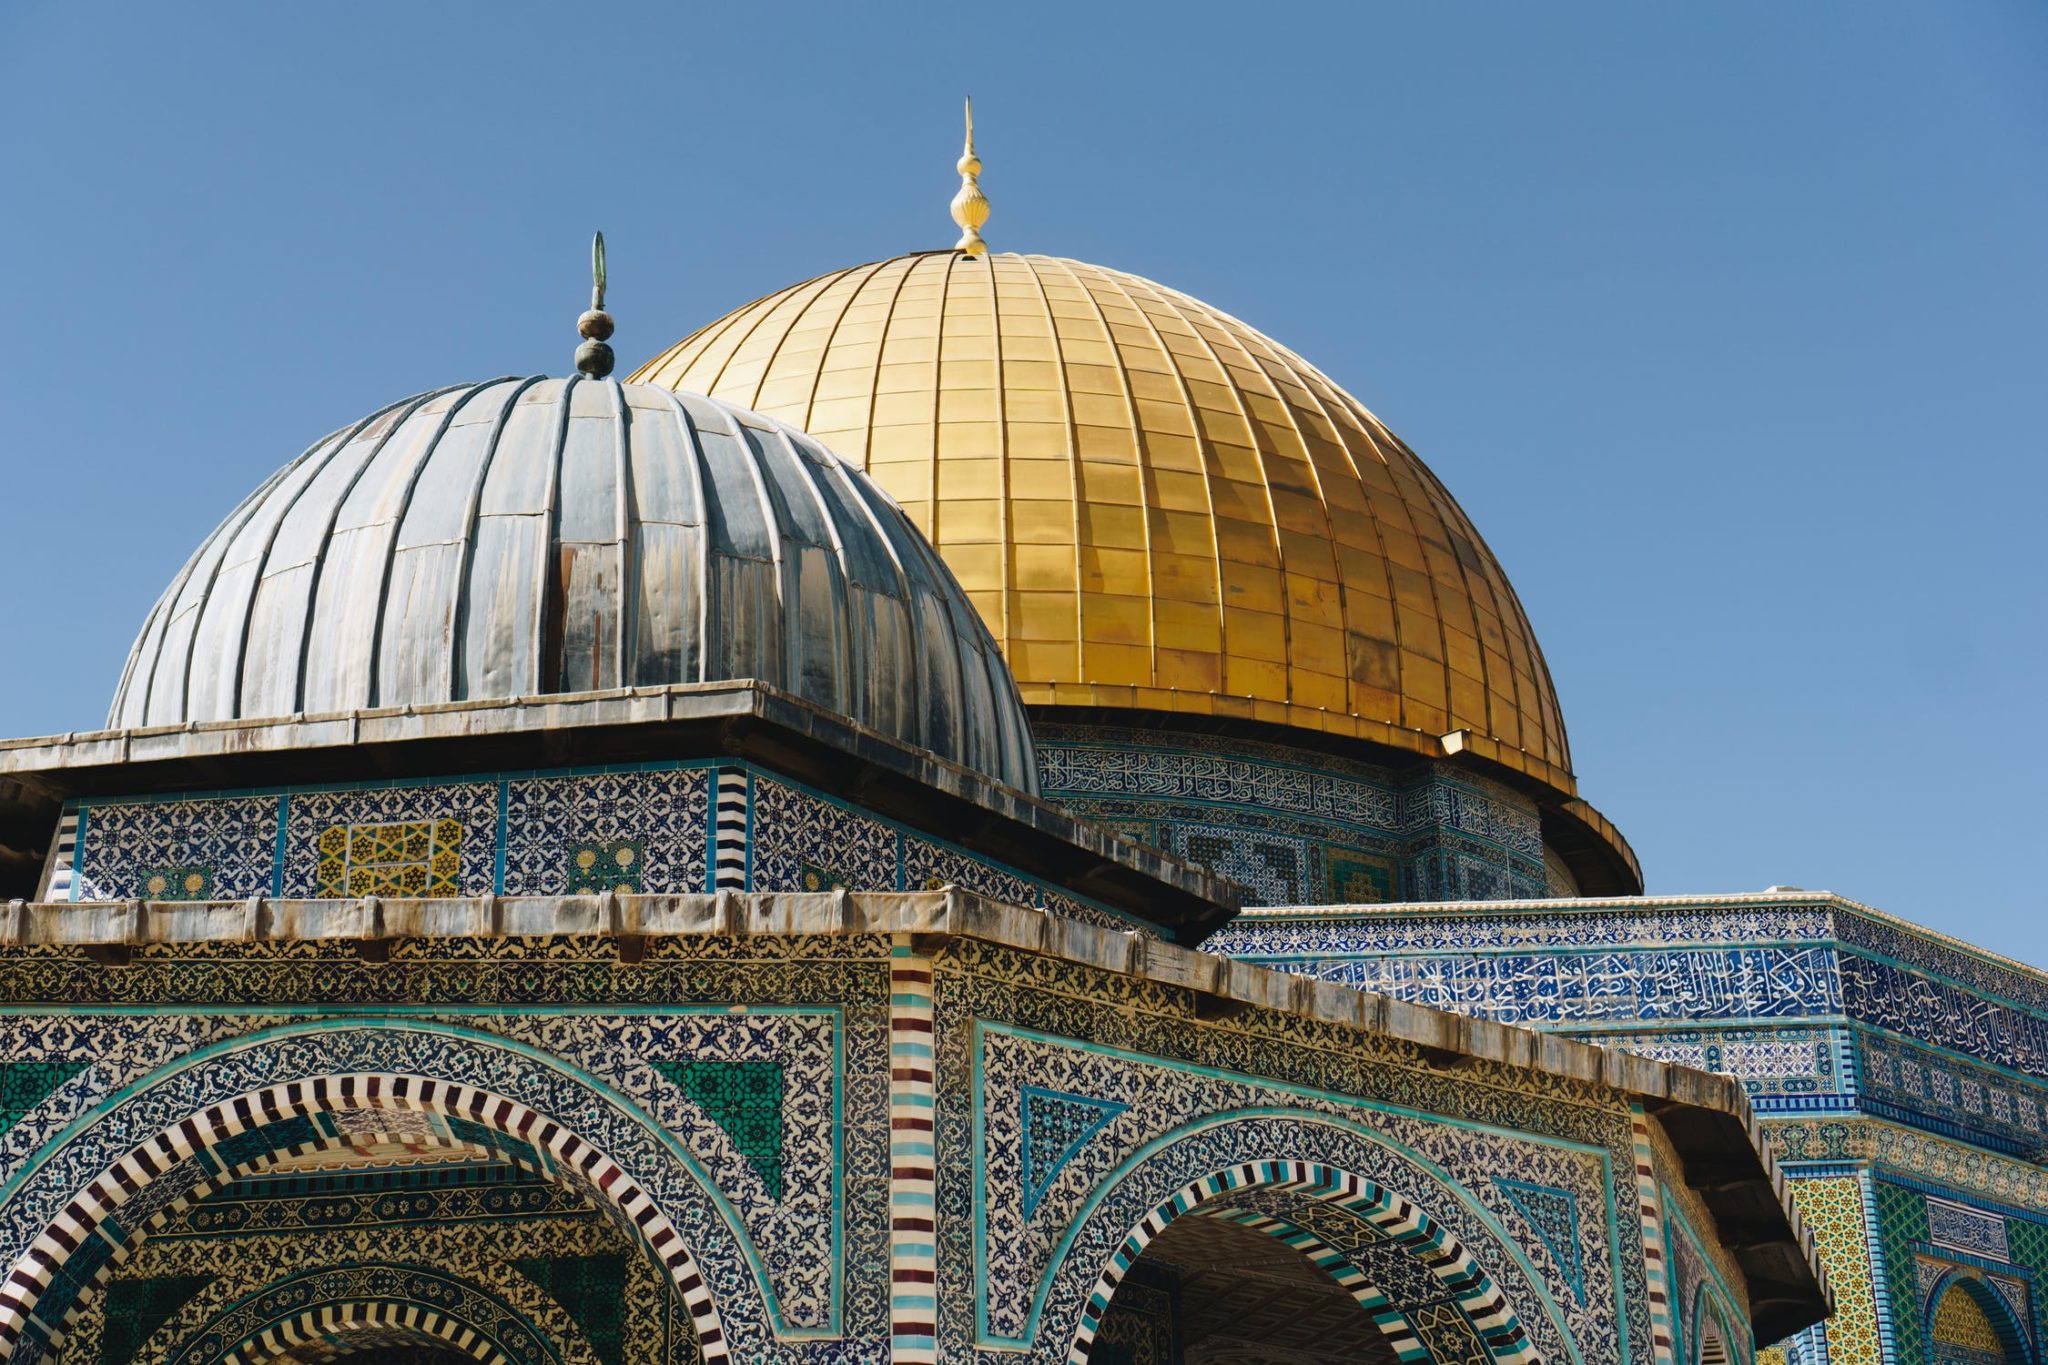 мечеть кадырова в израиле